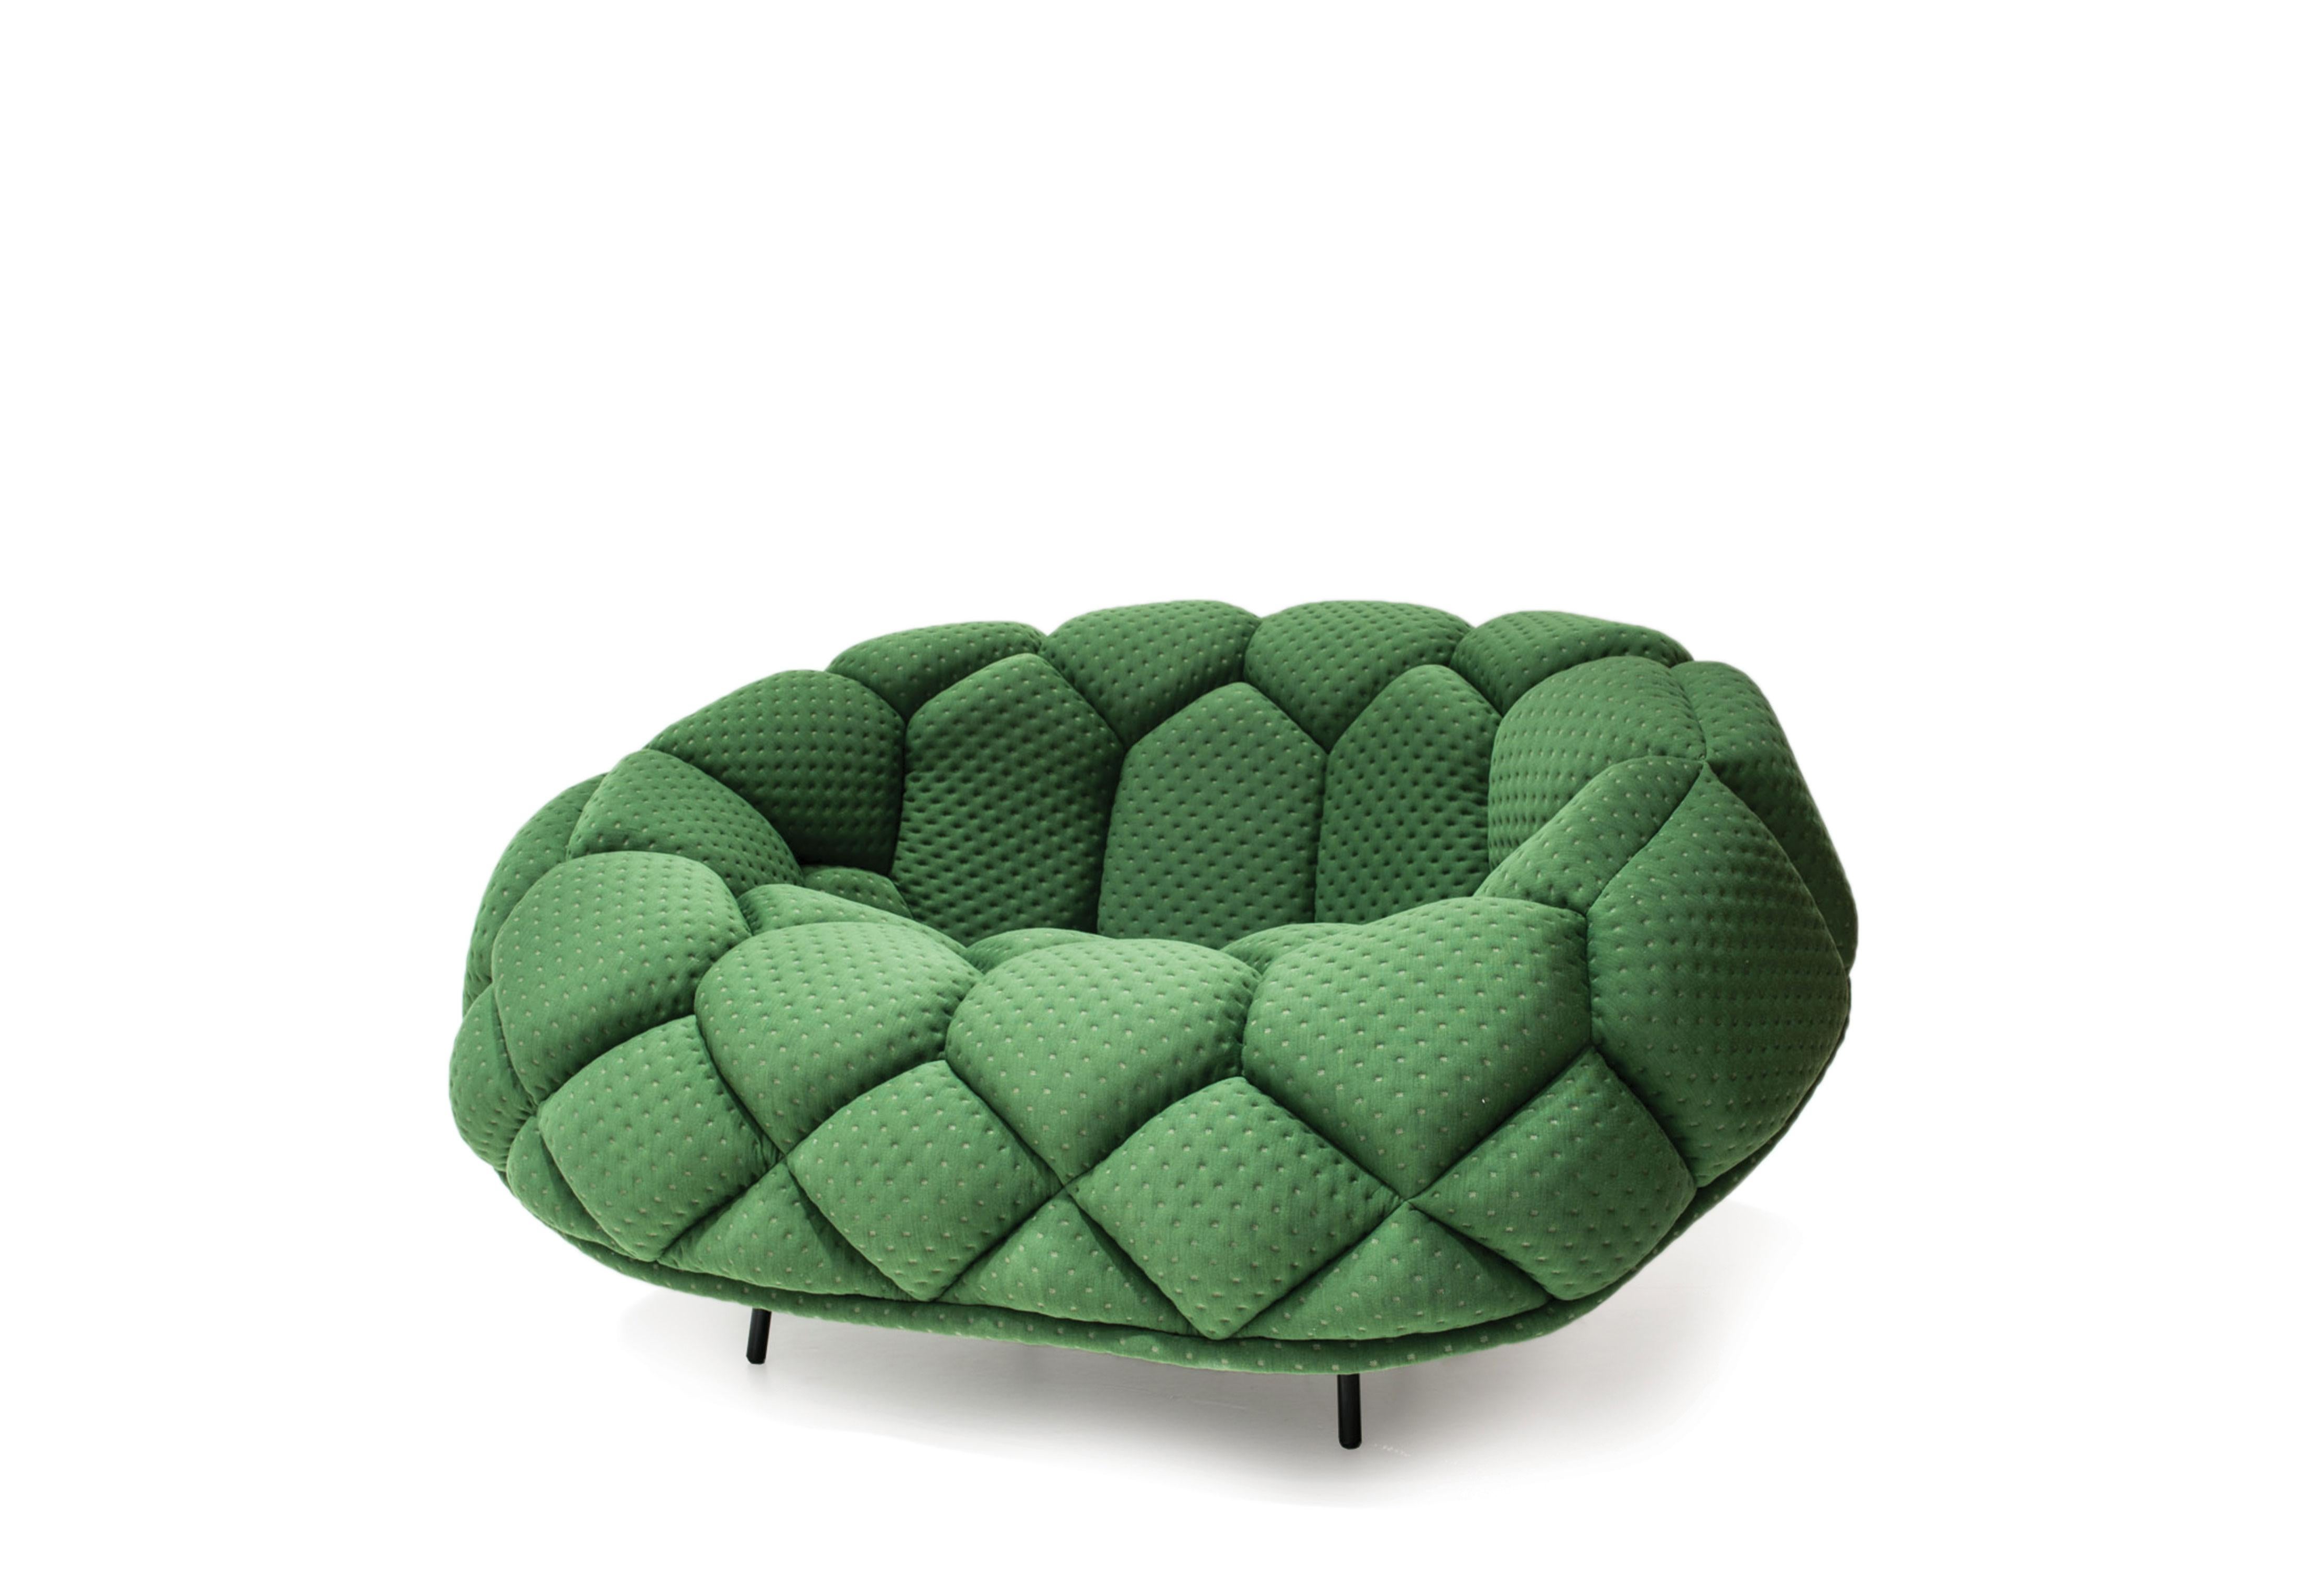 Konstantin Grcic hat eine kompakte, geometrische Liege mit reiner Form und großer Persönlichkeit geschaffen, die eine moderne, minimalistische Aktualisierung der traditionellen Liege darstellt. Das kompakte Design füllt die Lücke zwischen einem Sofa